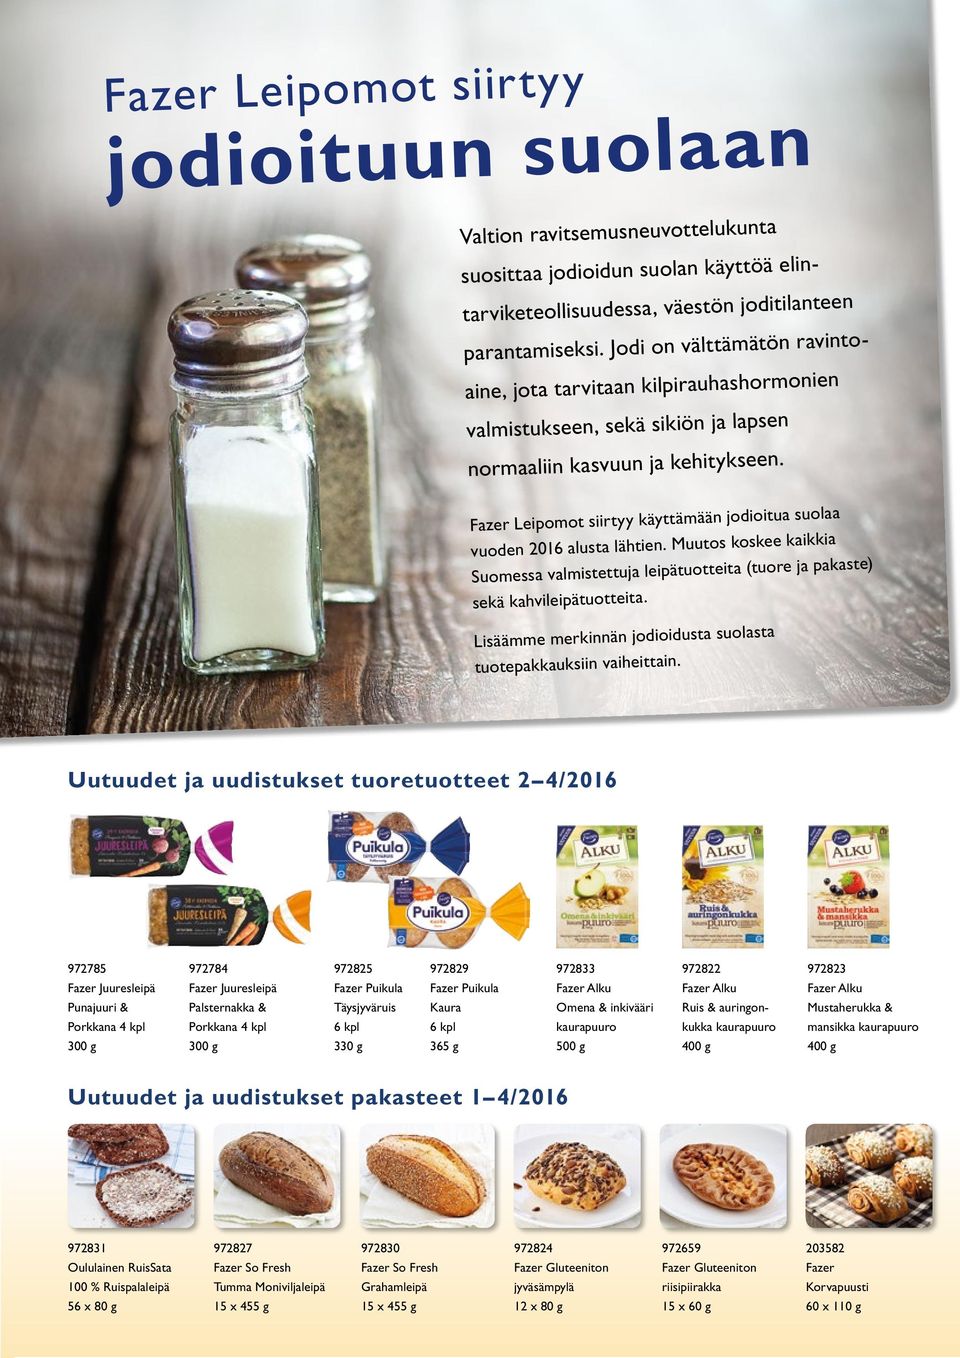 Fazer Leipomot siirtyy käyttämään jodioitua suolaa vuoden 2016 alusta lähtien. Muutos koskee kaikkia Suomessa valmistettuja leipä tuotteita (tuore ja pakaste) sekä kahvi leipä tuotteita.